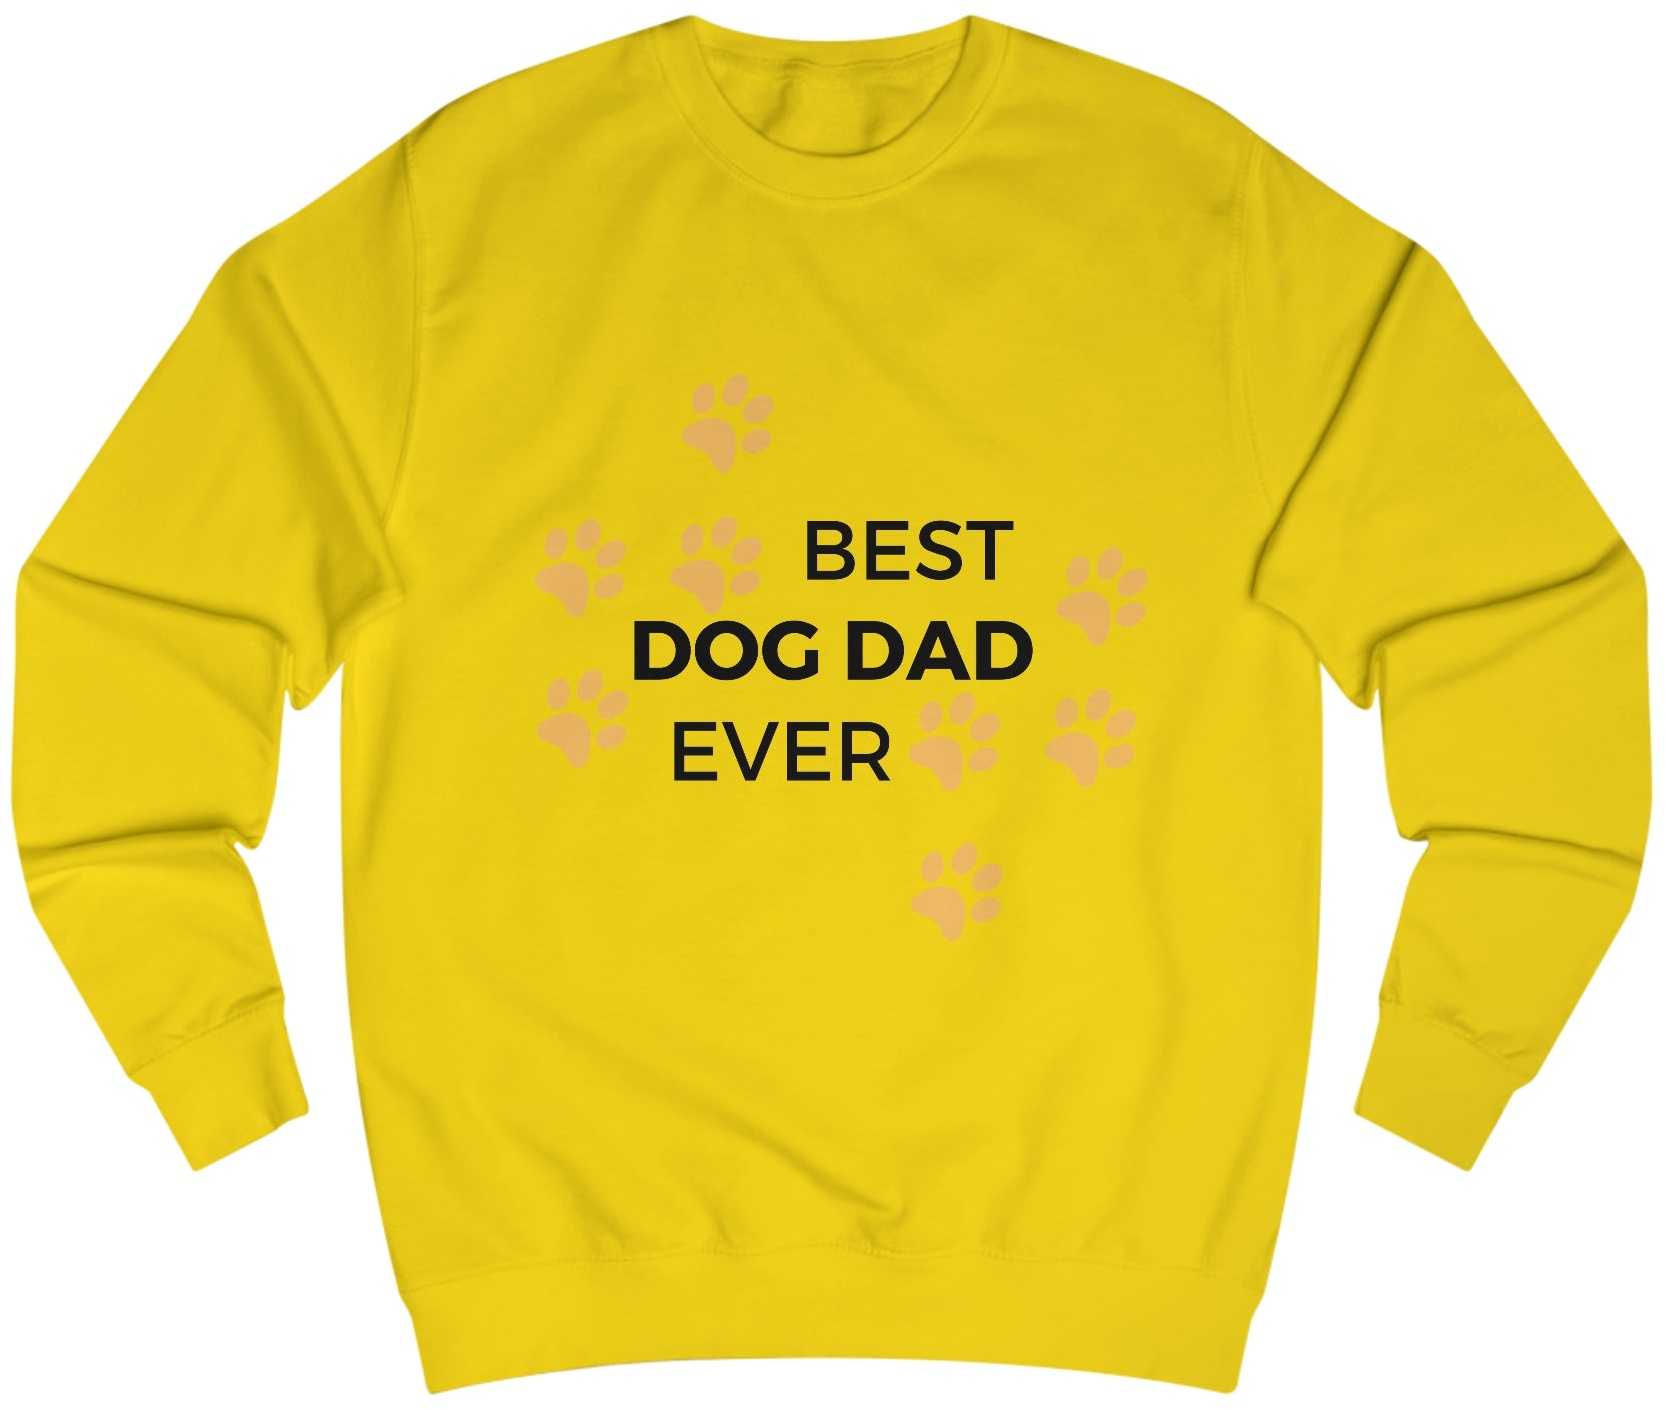 Männer Sweatshirt "DOG DAD" - Gelb / S